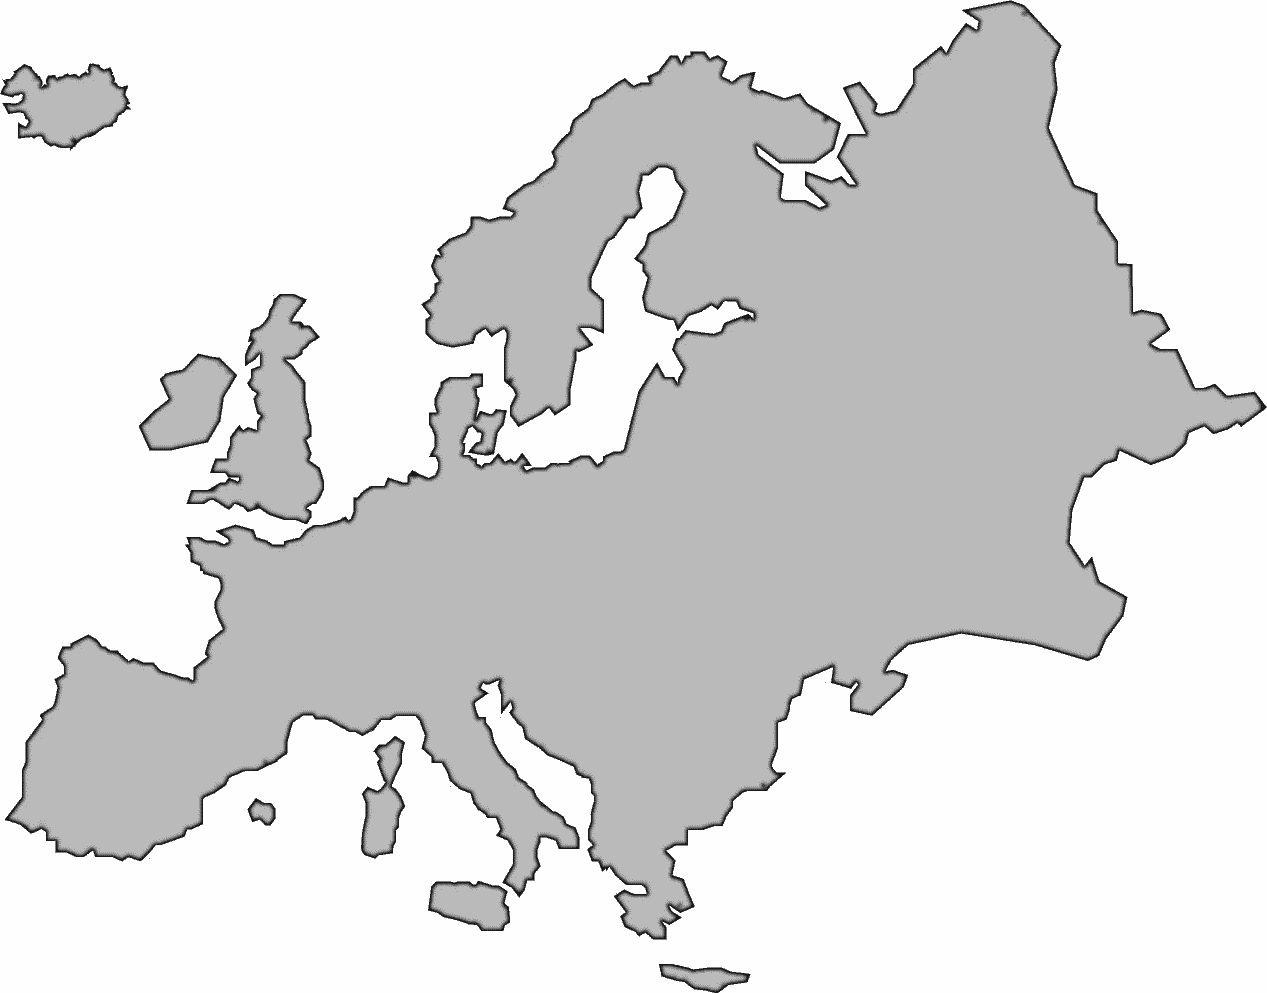 Europe large BW